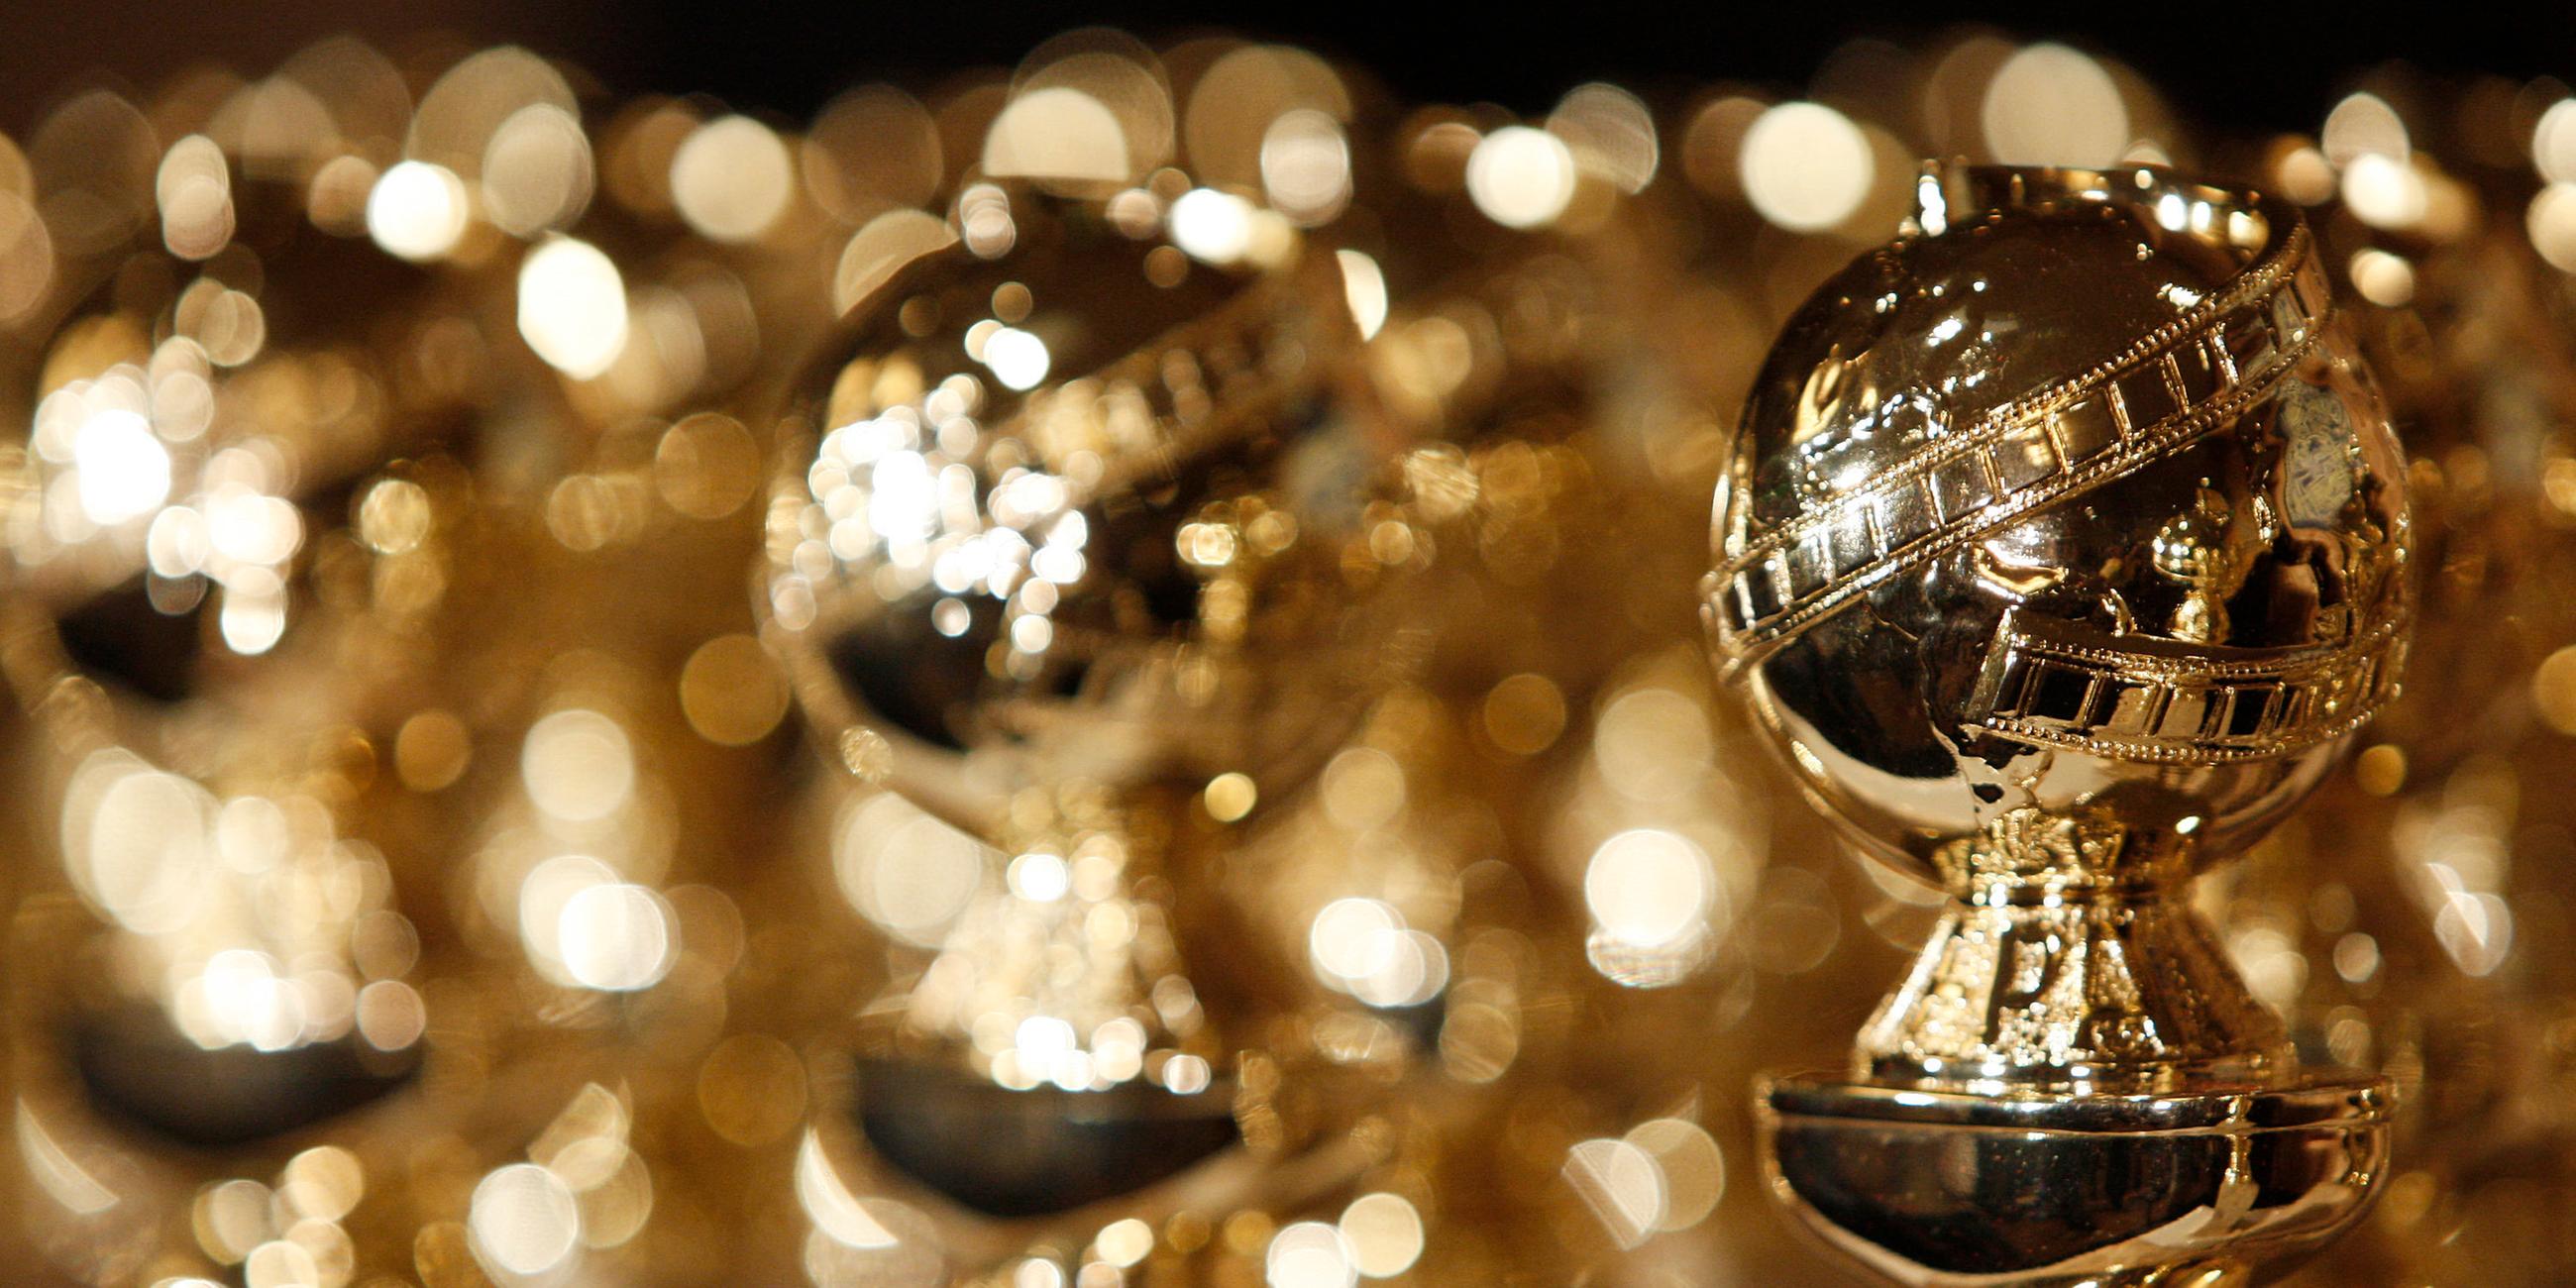 Archiv: Golden Globes Kugeln der Golden Globe-Verleihung in Beverly Hills (USA)